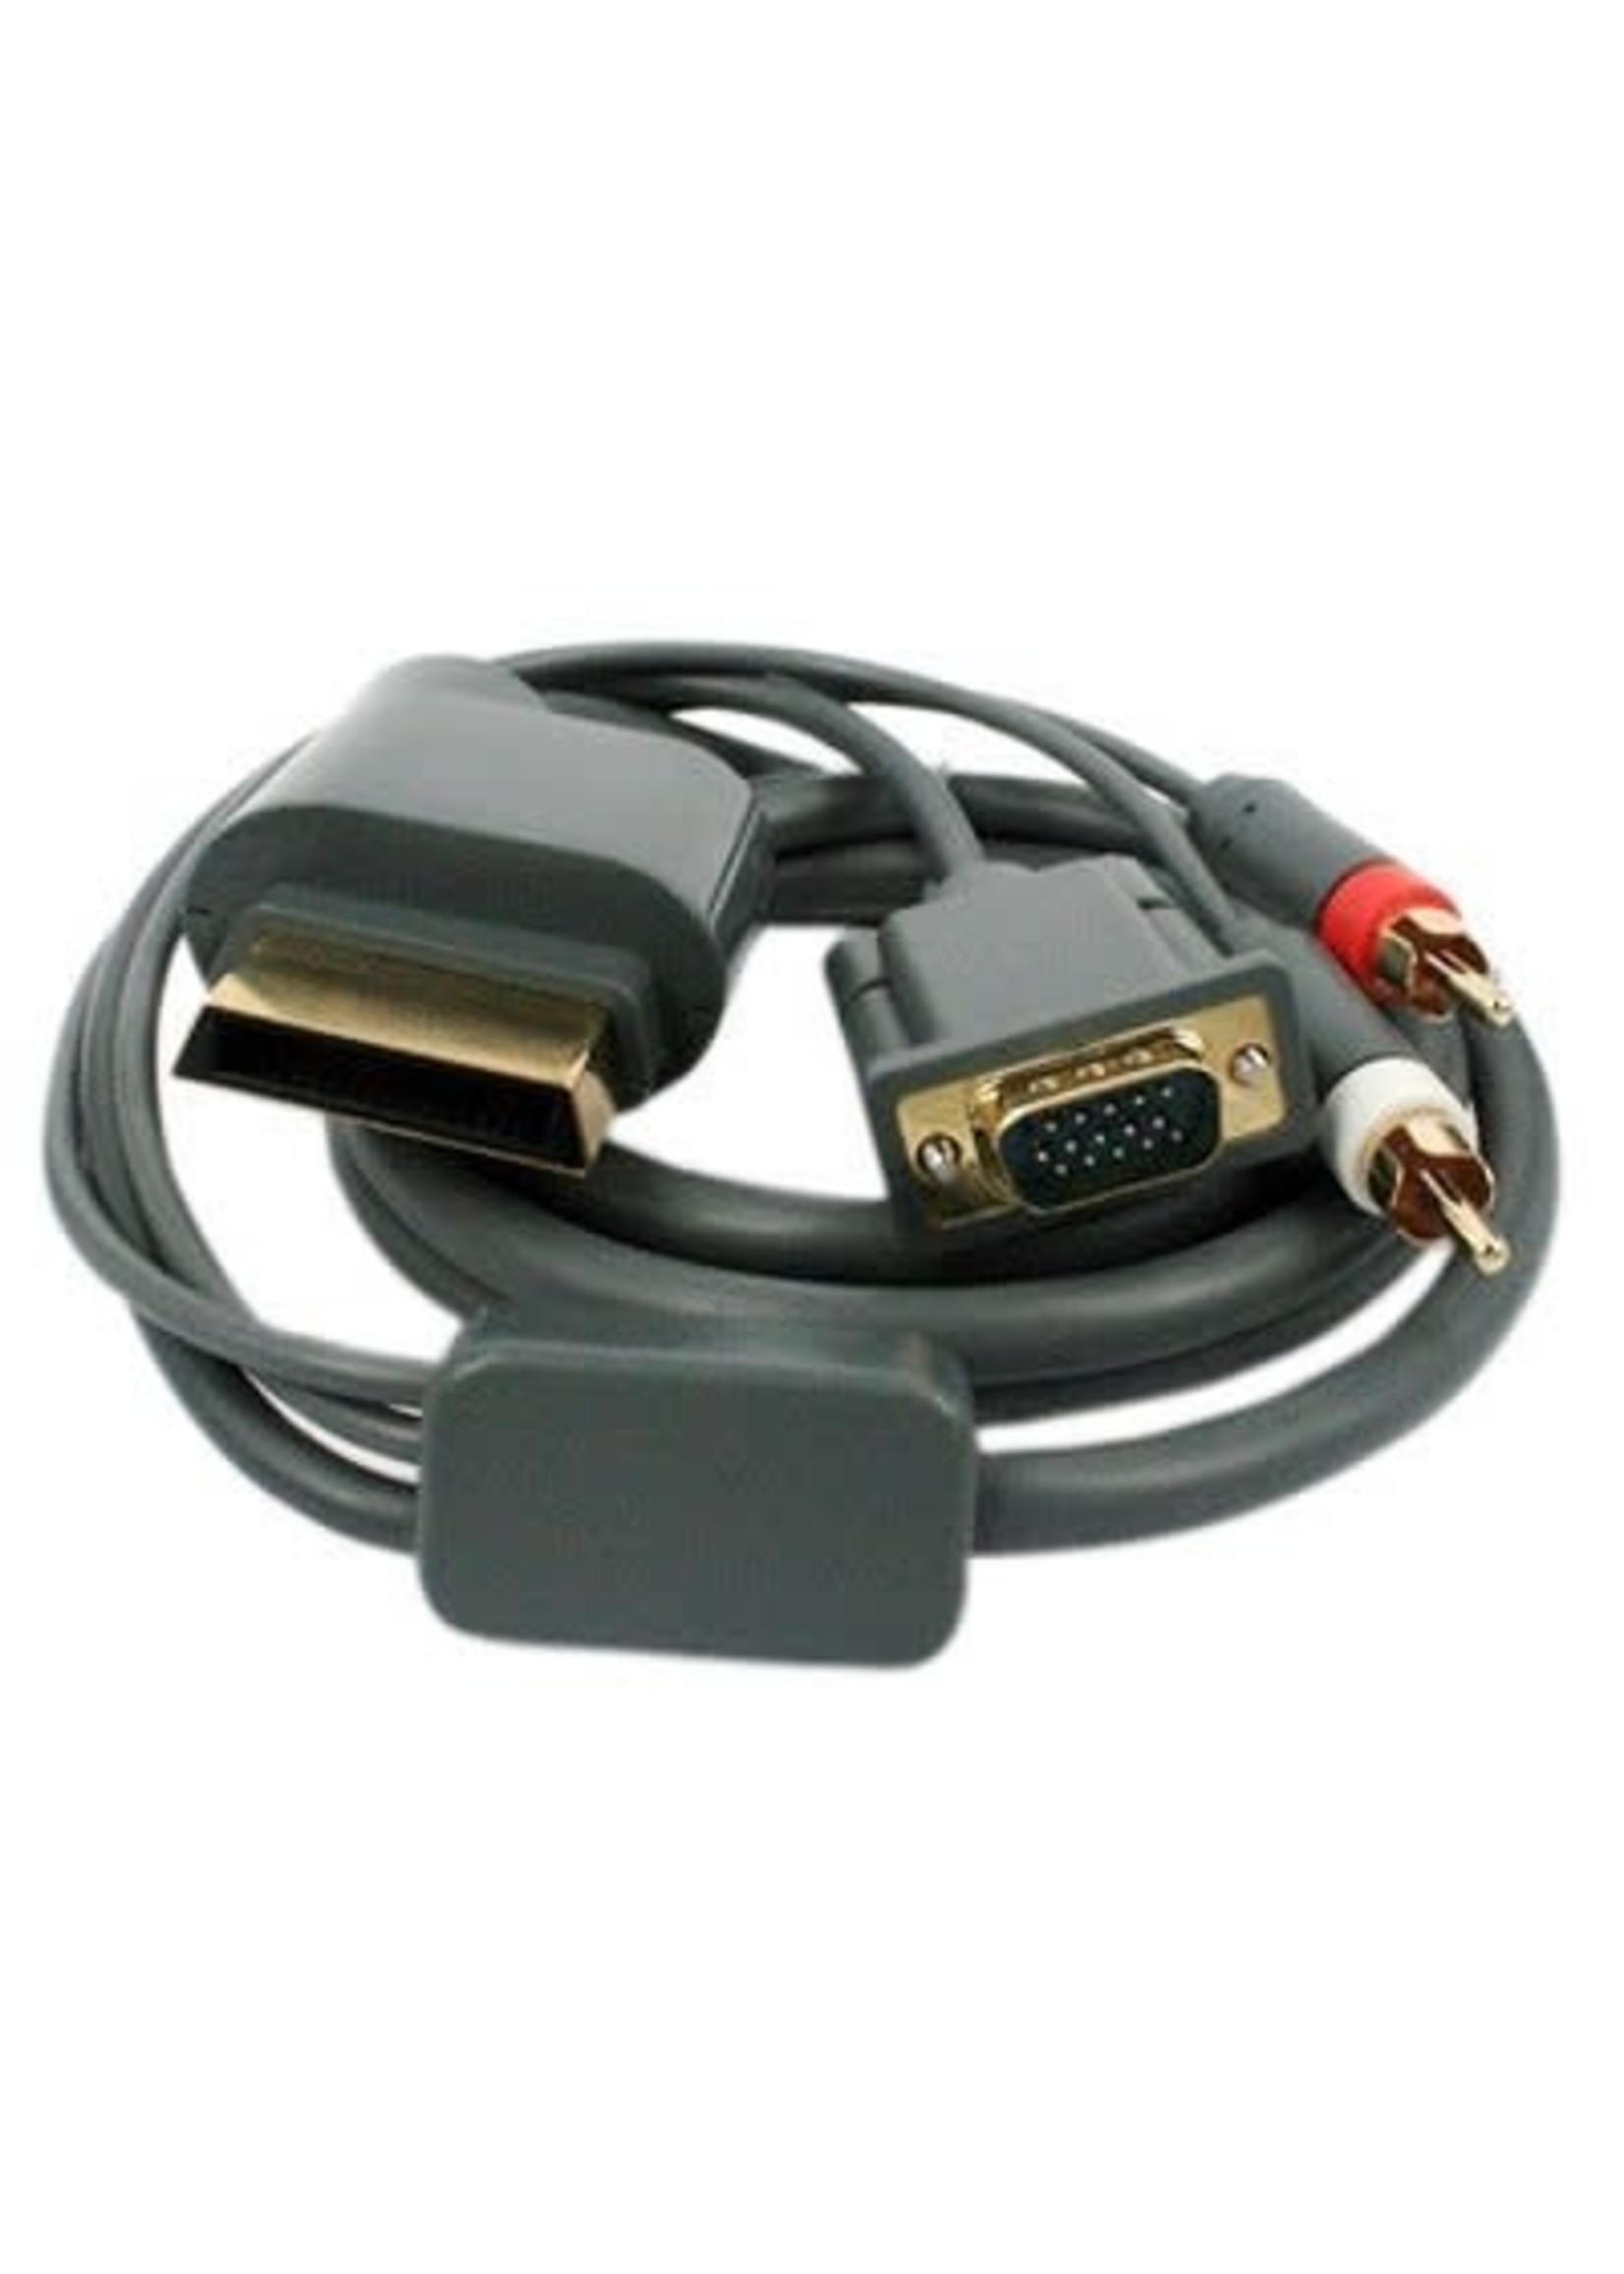 VGA AV Cable for Xbox 360 Xbox Slim